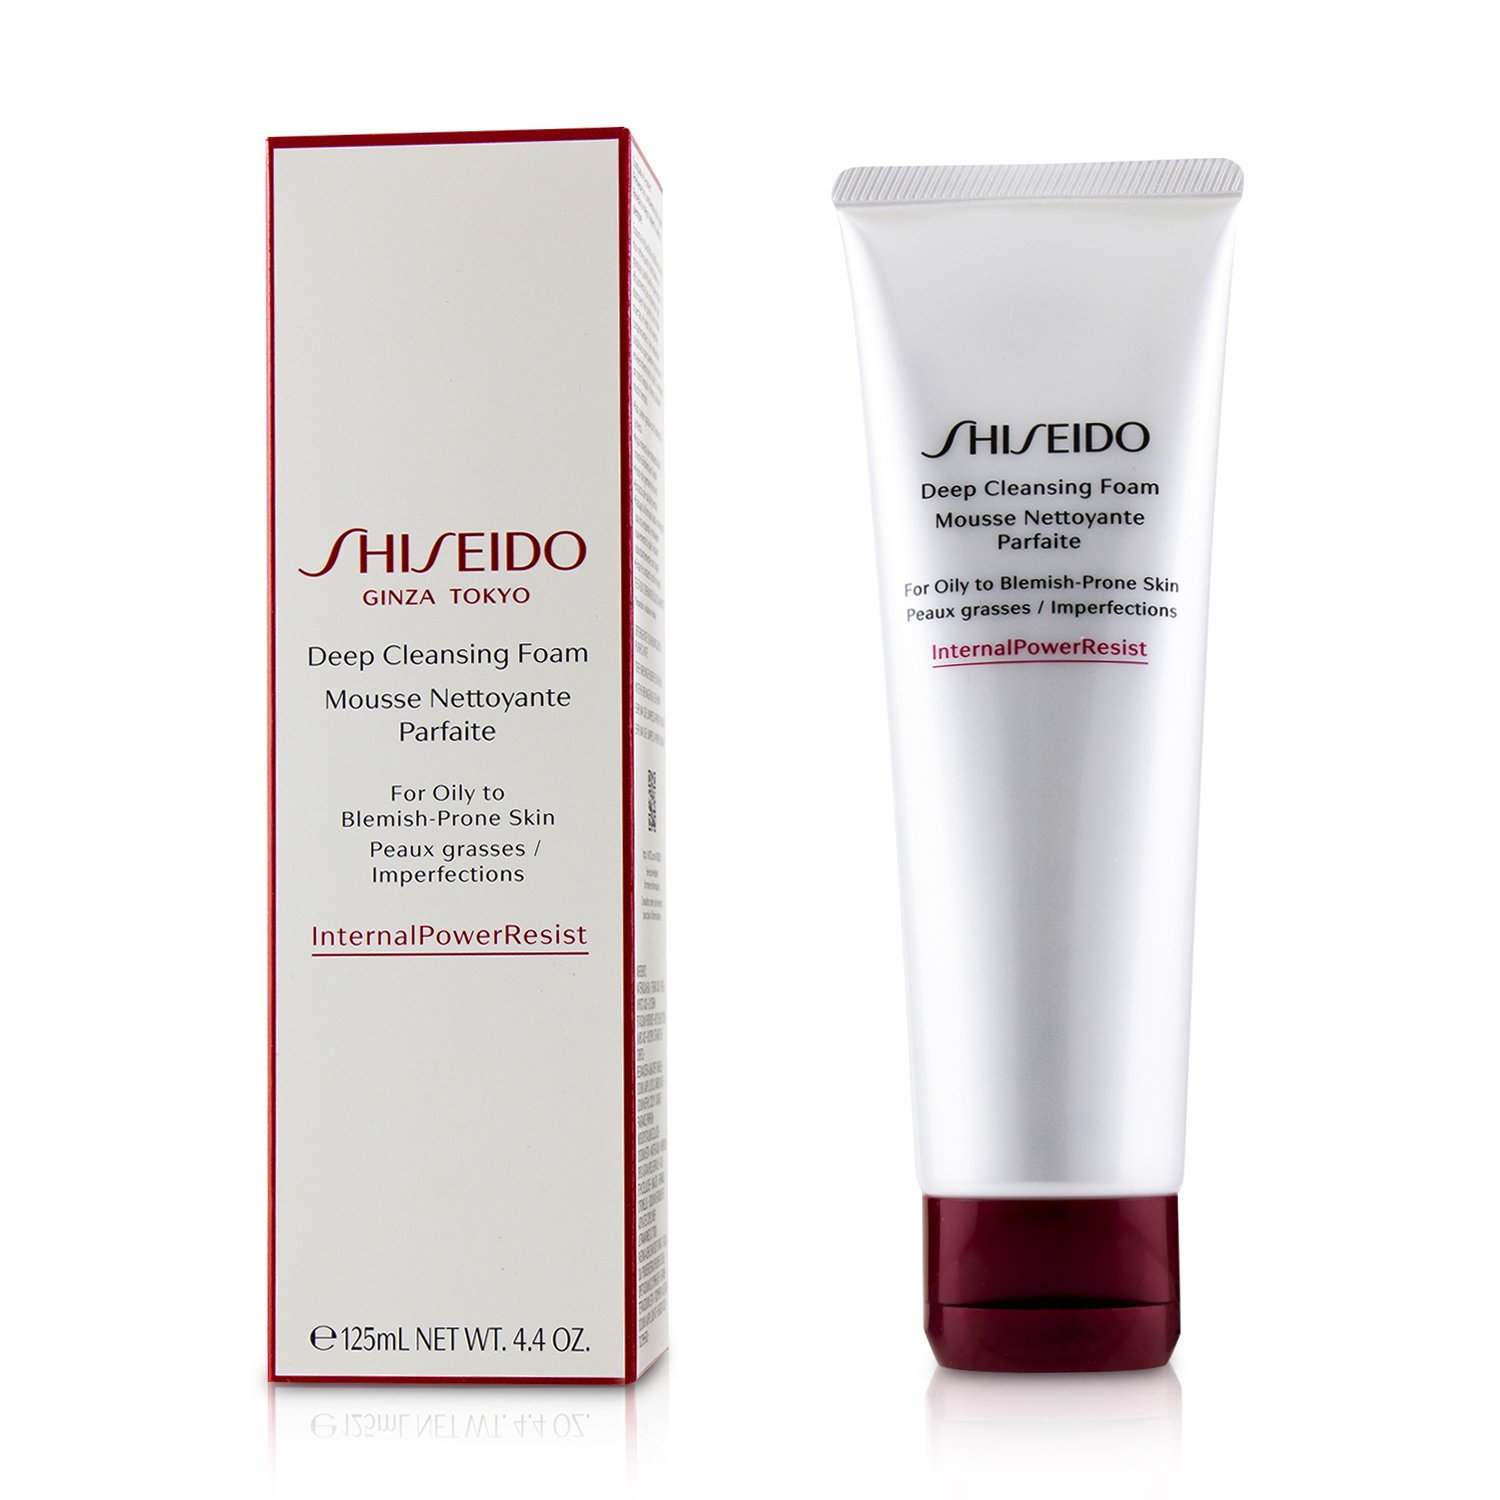 資生堂 Shiseido - 資生堂深層潔膚皂